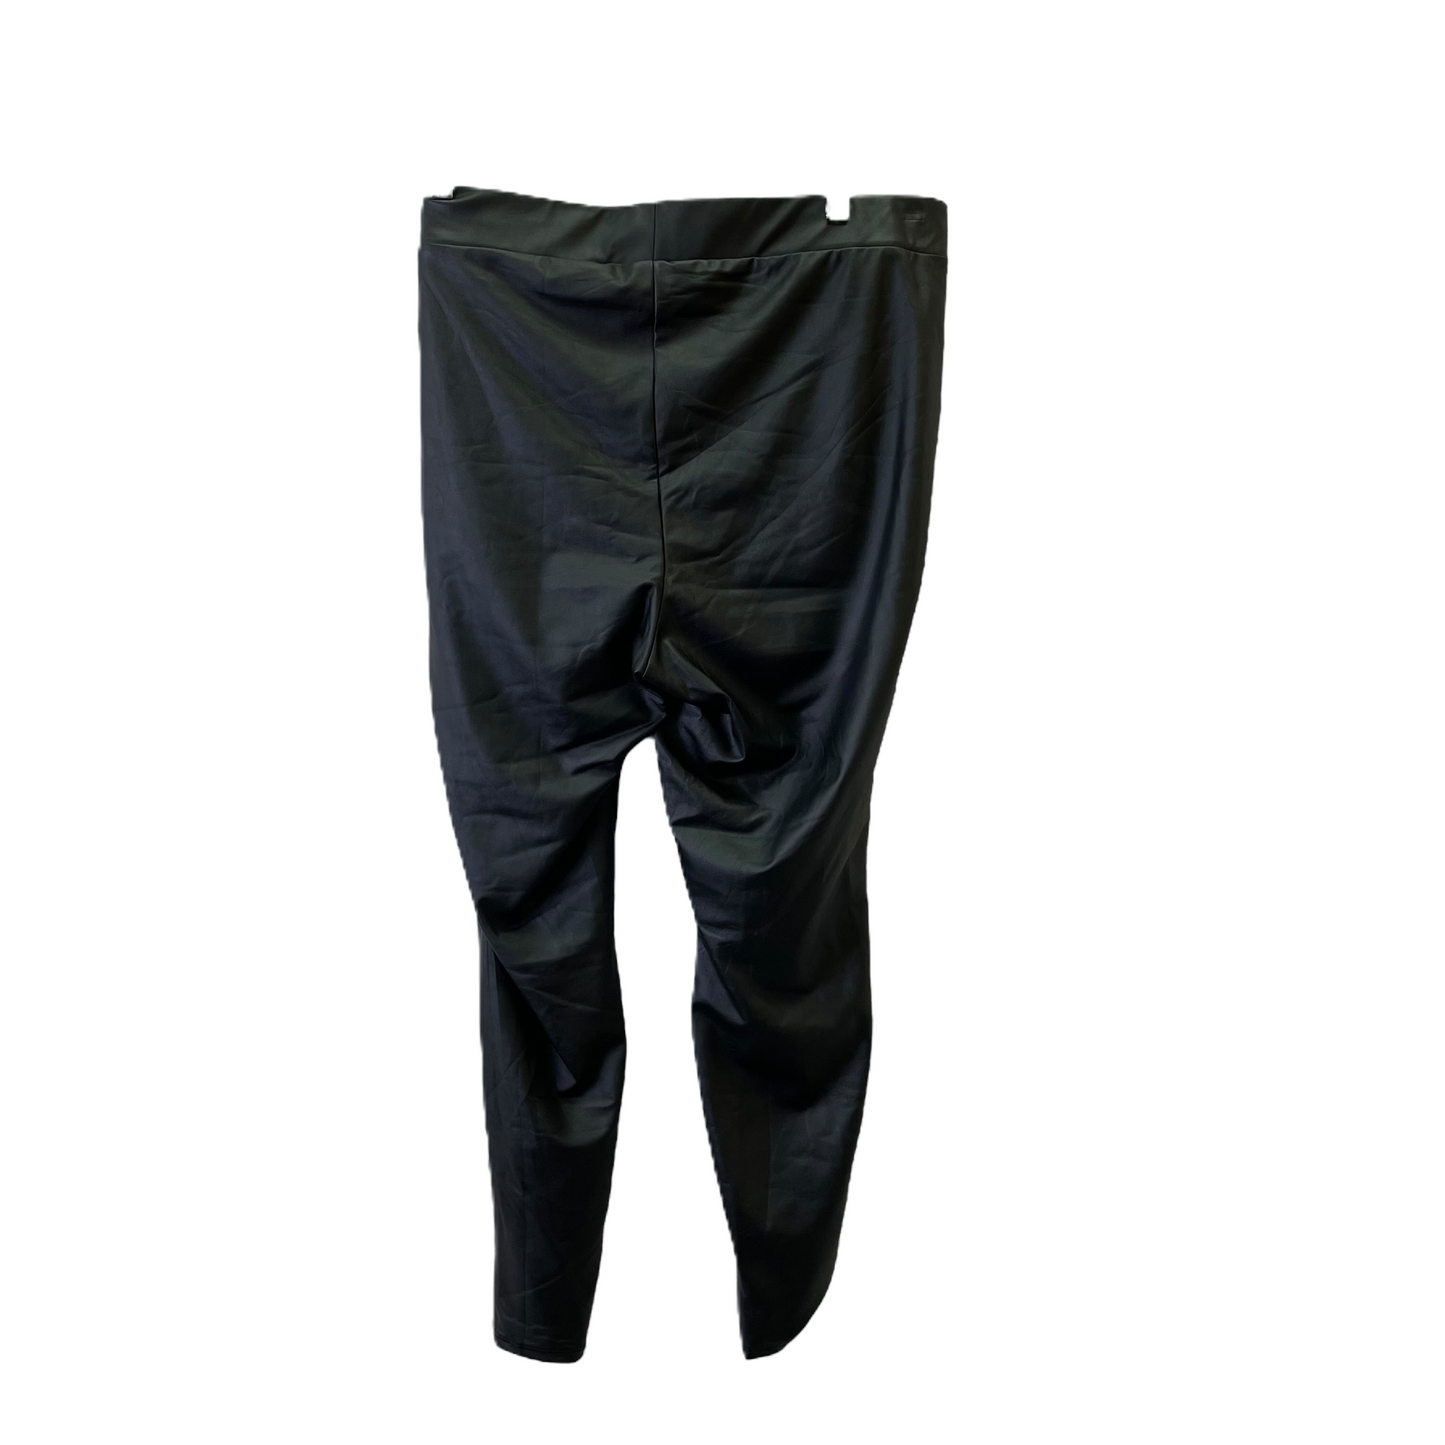 Black Pants Leggings By Torrid, Size: 2x